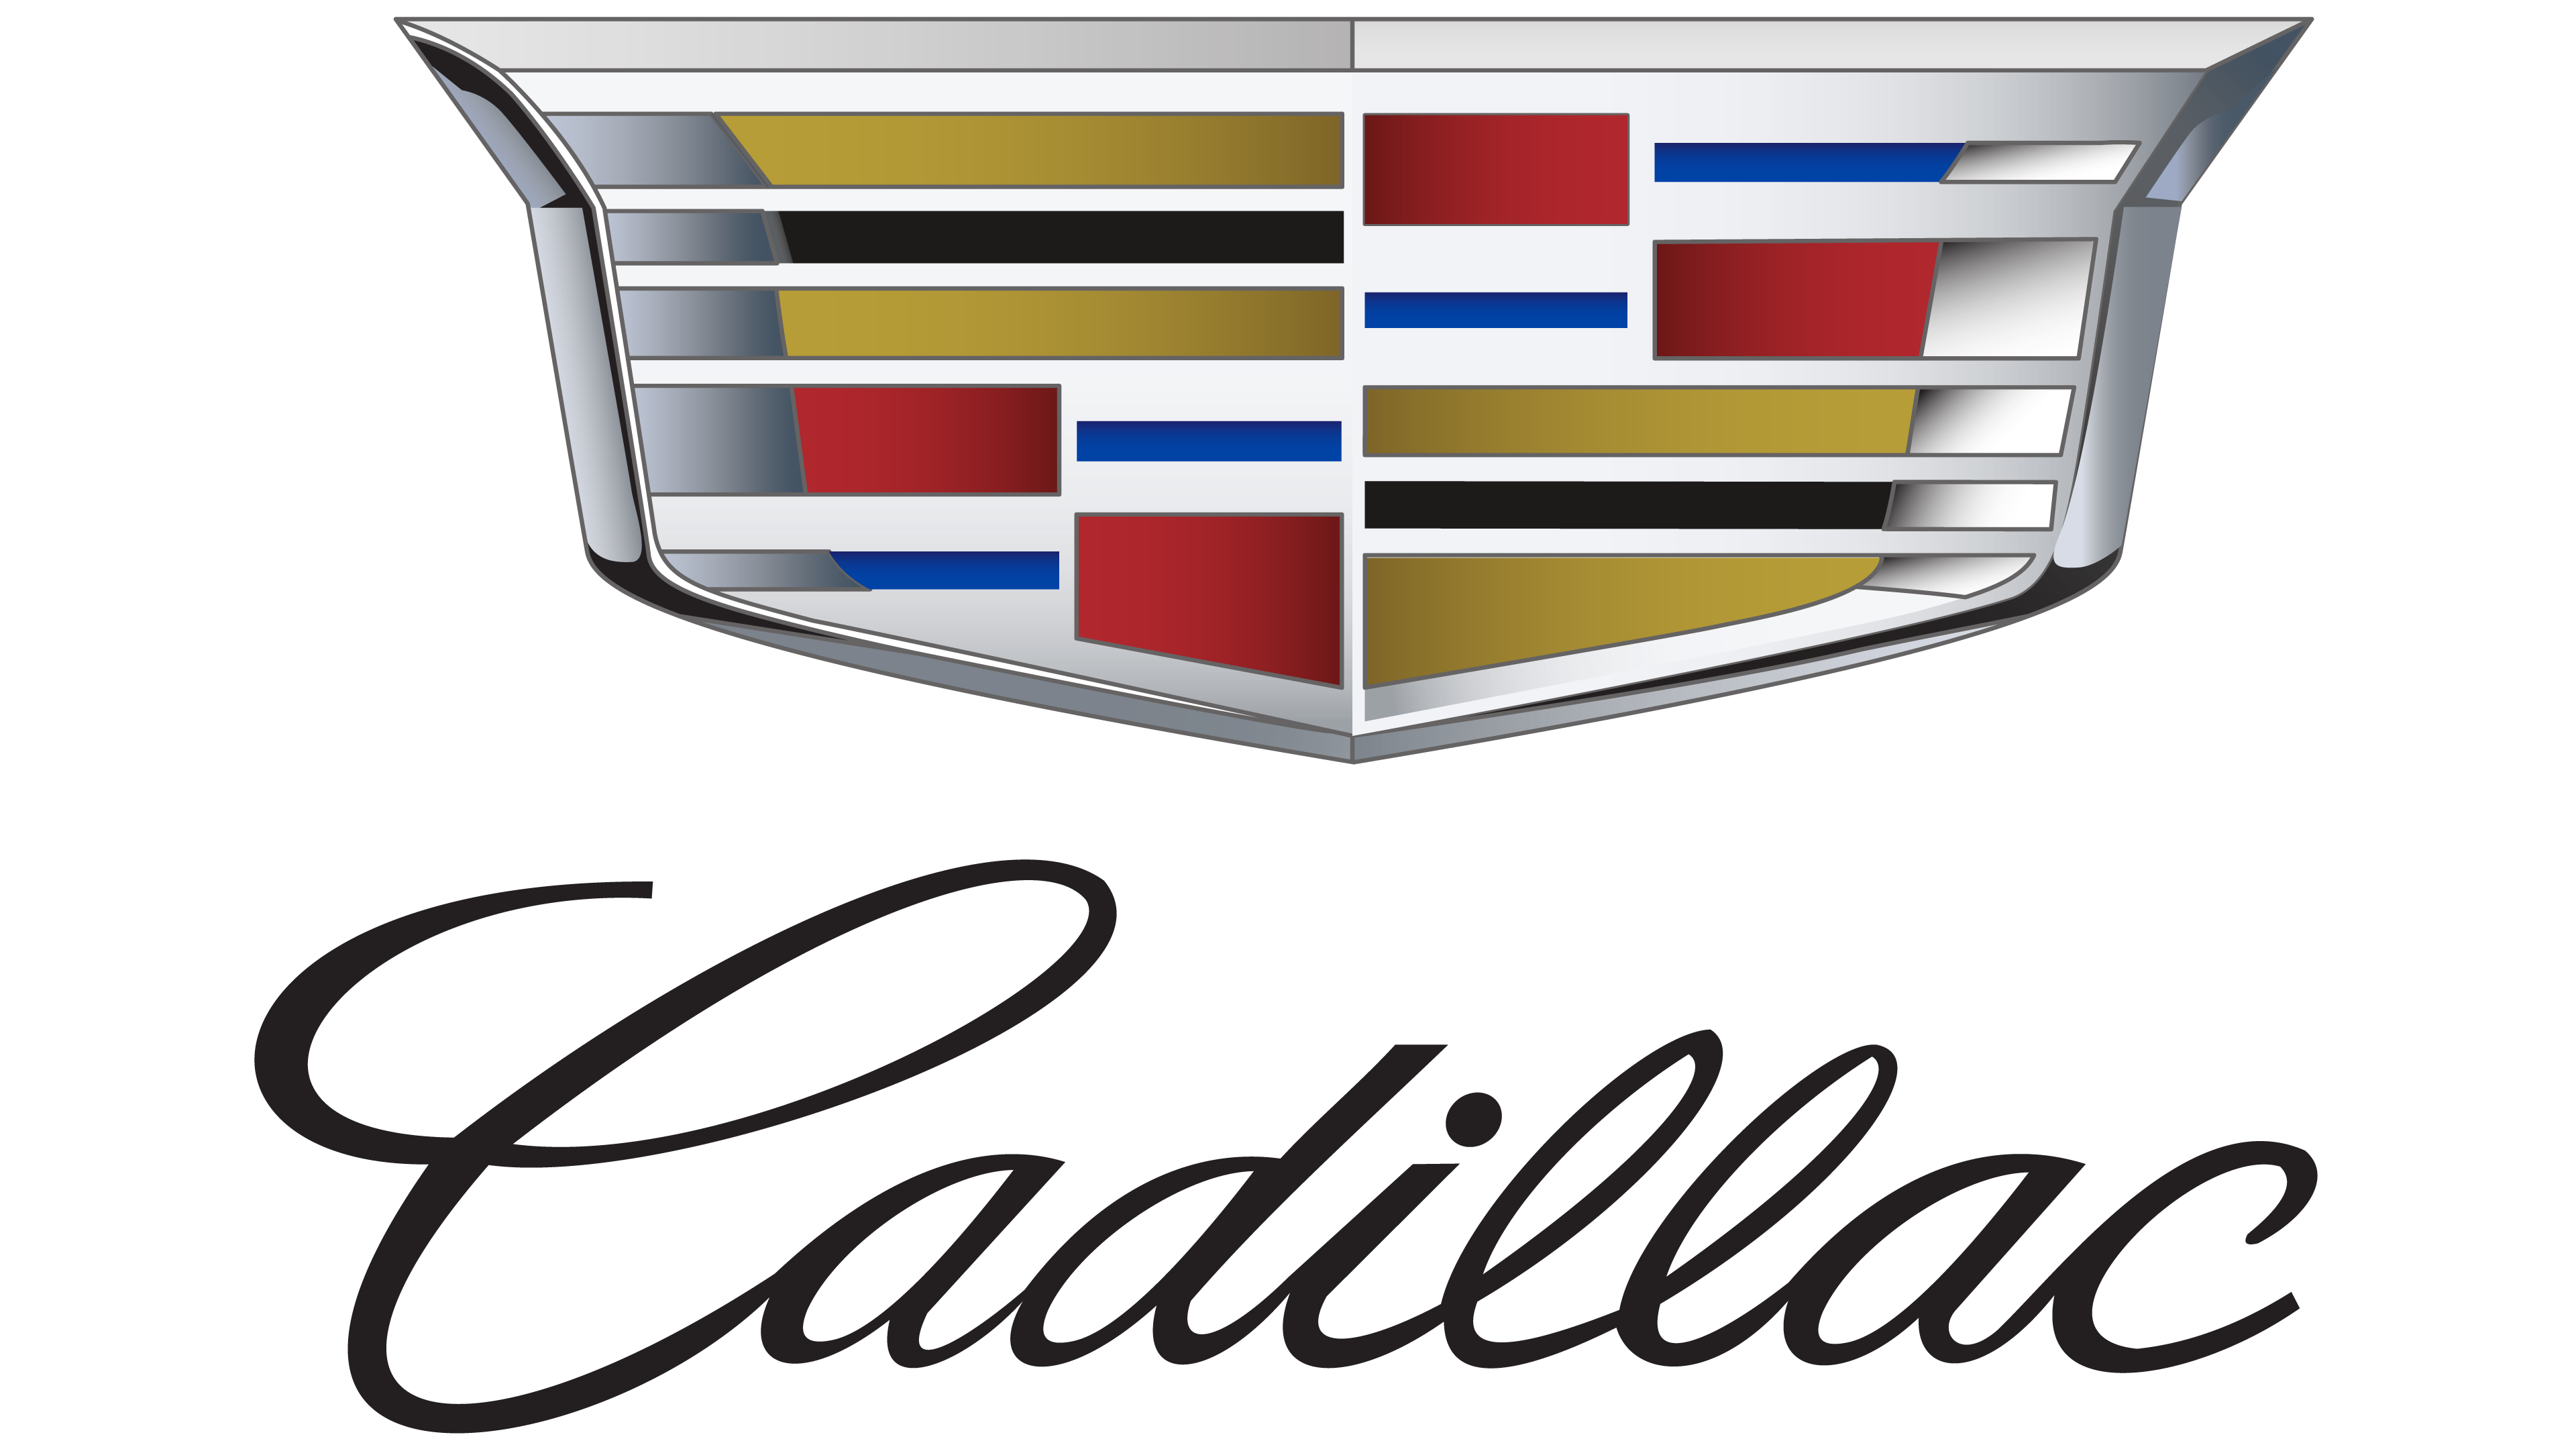 Logo Cadillaca